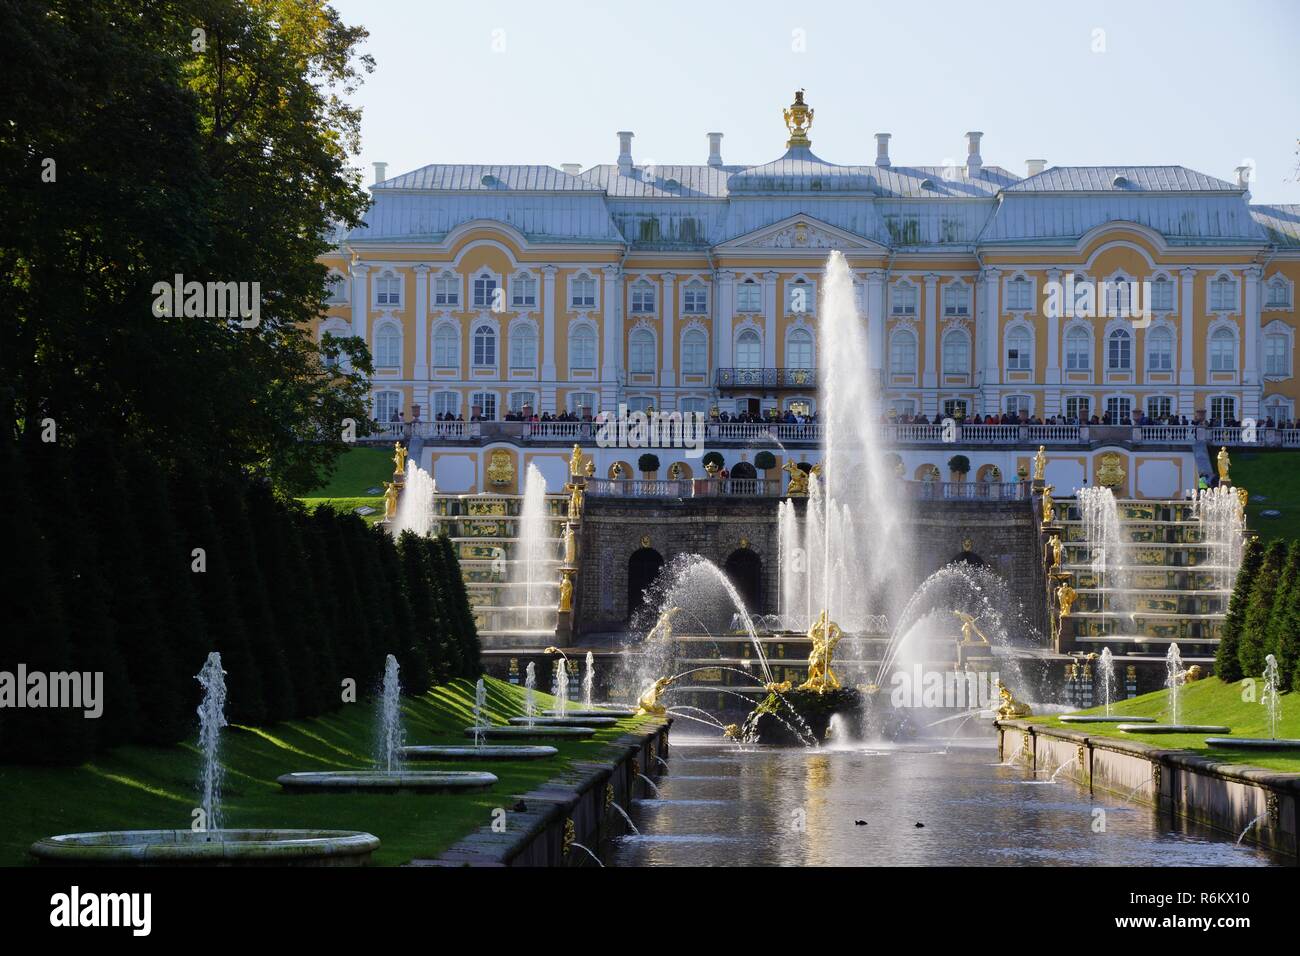 Palais et jardins de Peterhof Saint-Pétersbourg, Russie. Excursion croisière sur le Norwegian Cruises dans les pays baltes. Le palais a des vues magnifiques et des jardins. Banque D'Images